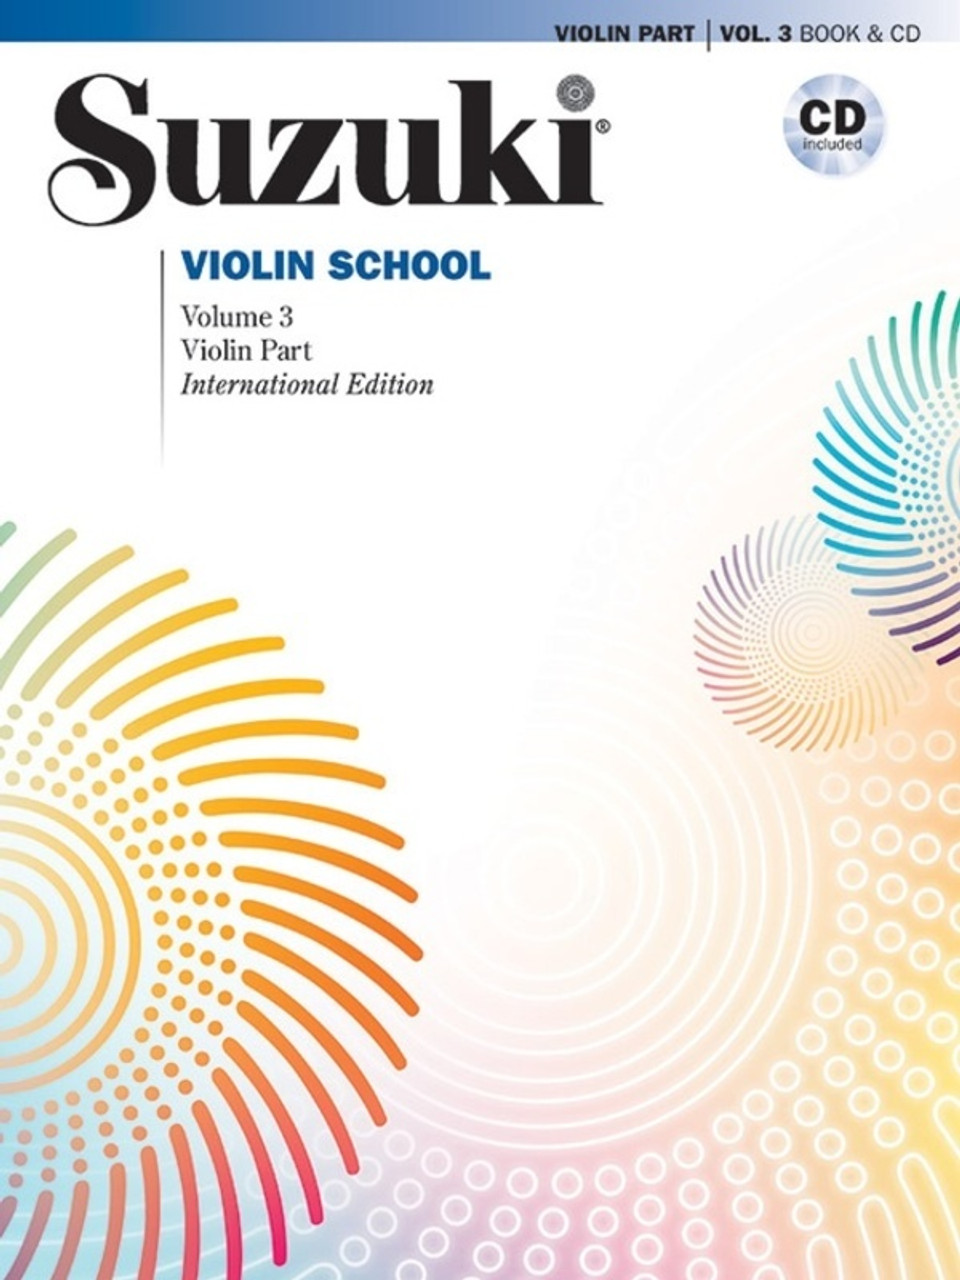 Suzuki Violin School Vol. 3 Violin Part & CD